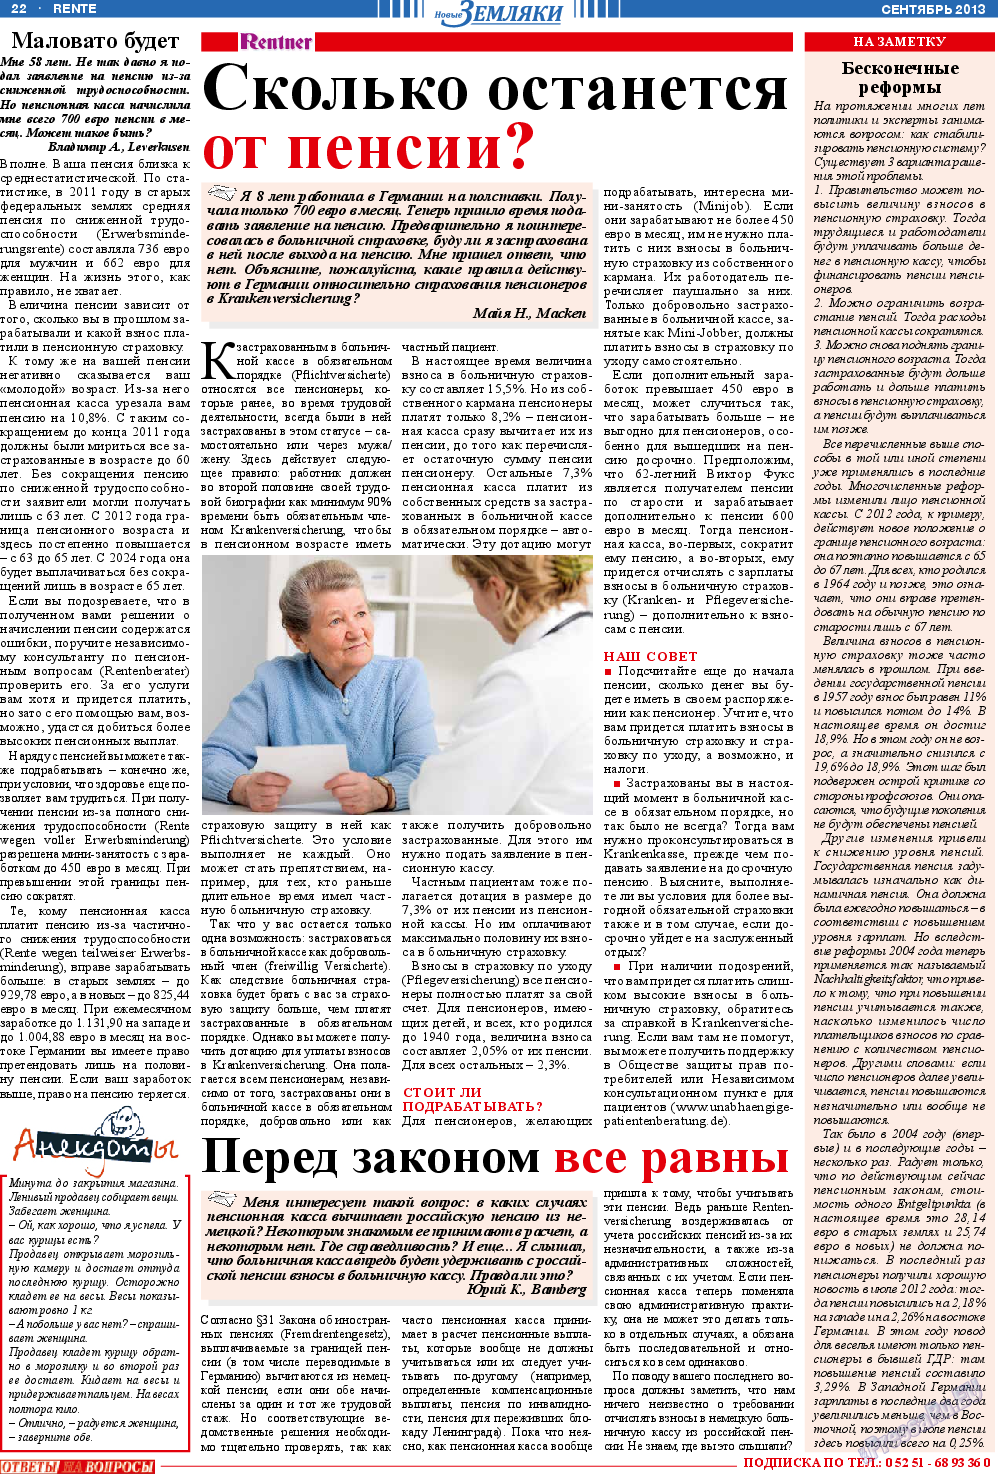 Новые Земляки, газета. 2013 №9 стр.22